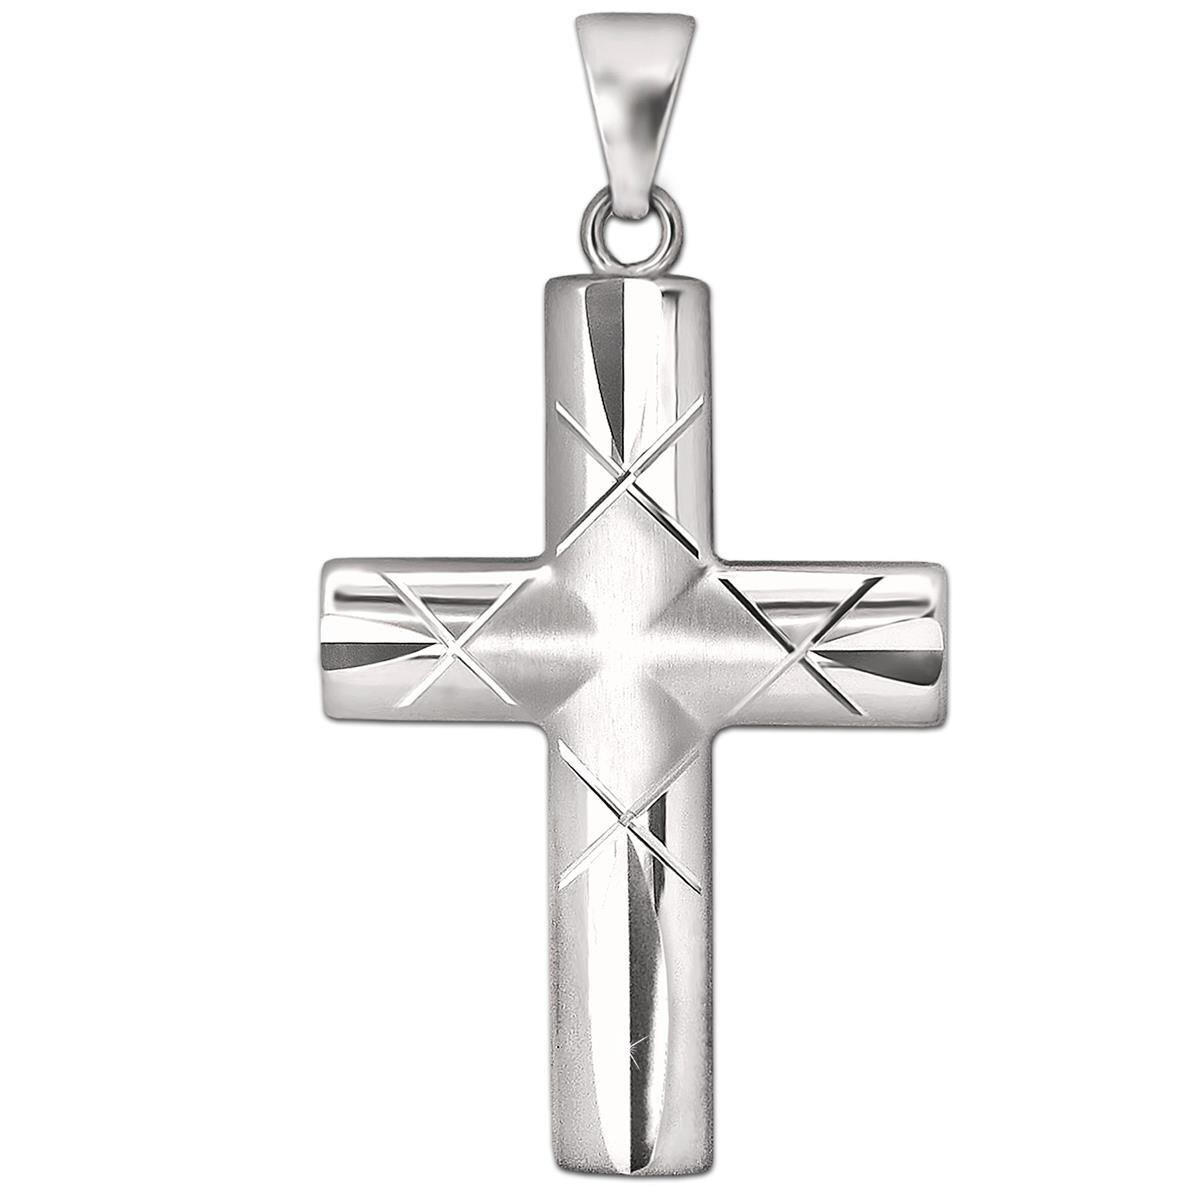 Silbernes großes Herren Kreuz 32 mm gewölbt Balken breit Enden gekerbt Echt Silber 925 rhodiniert